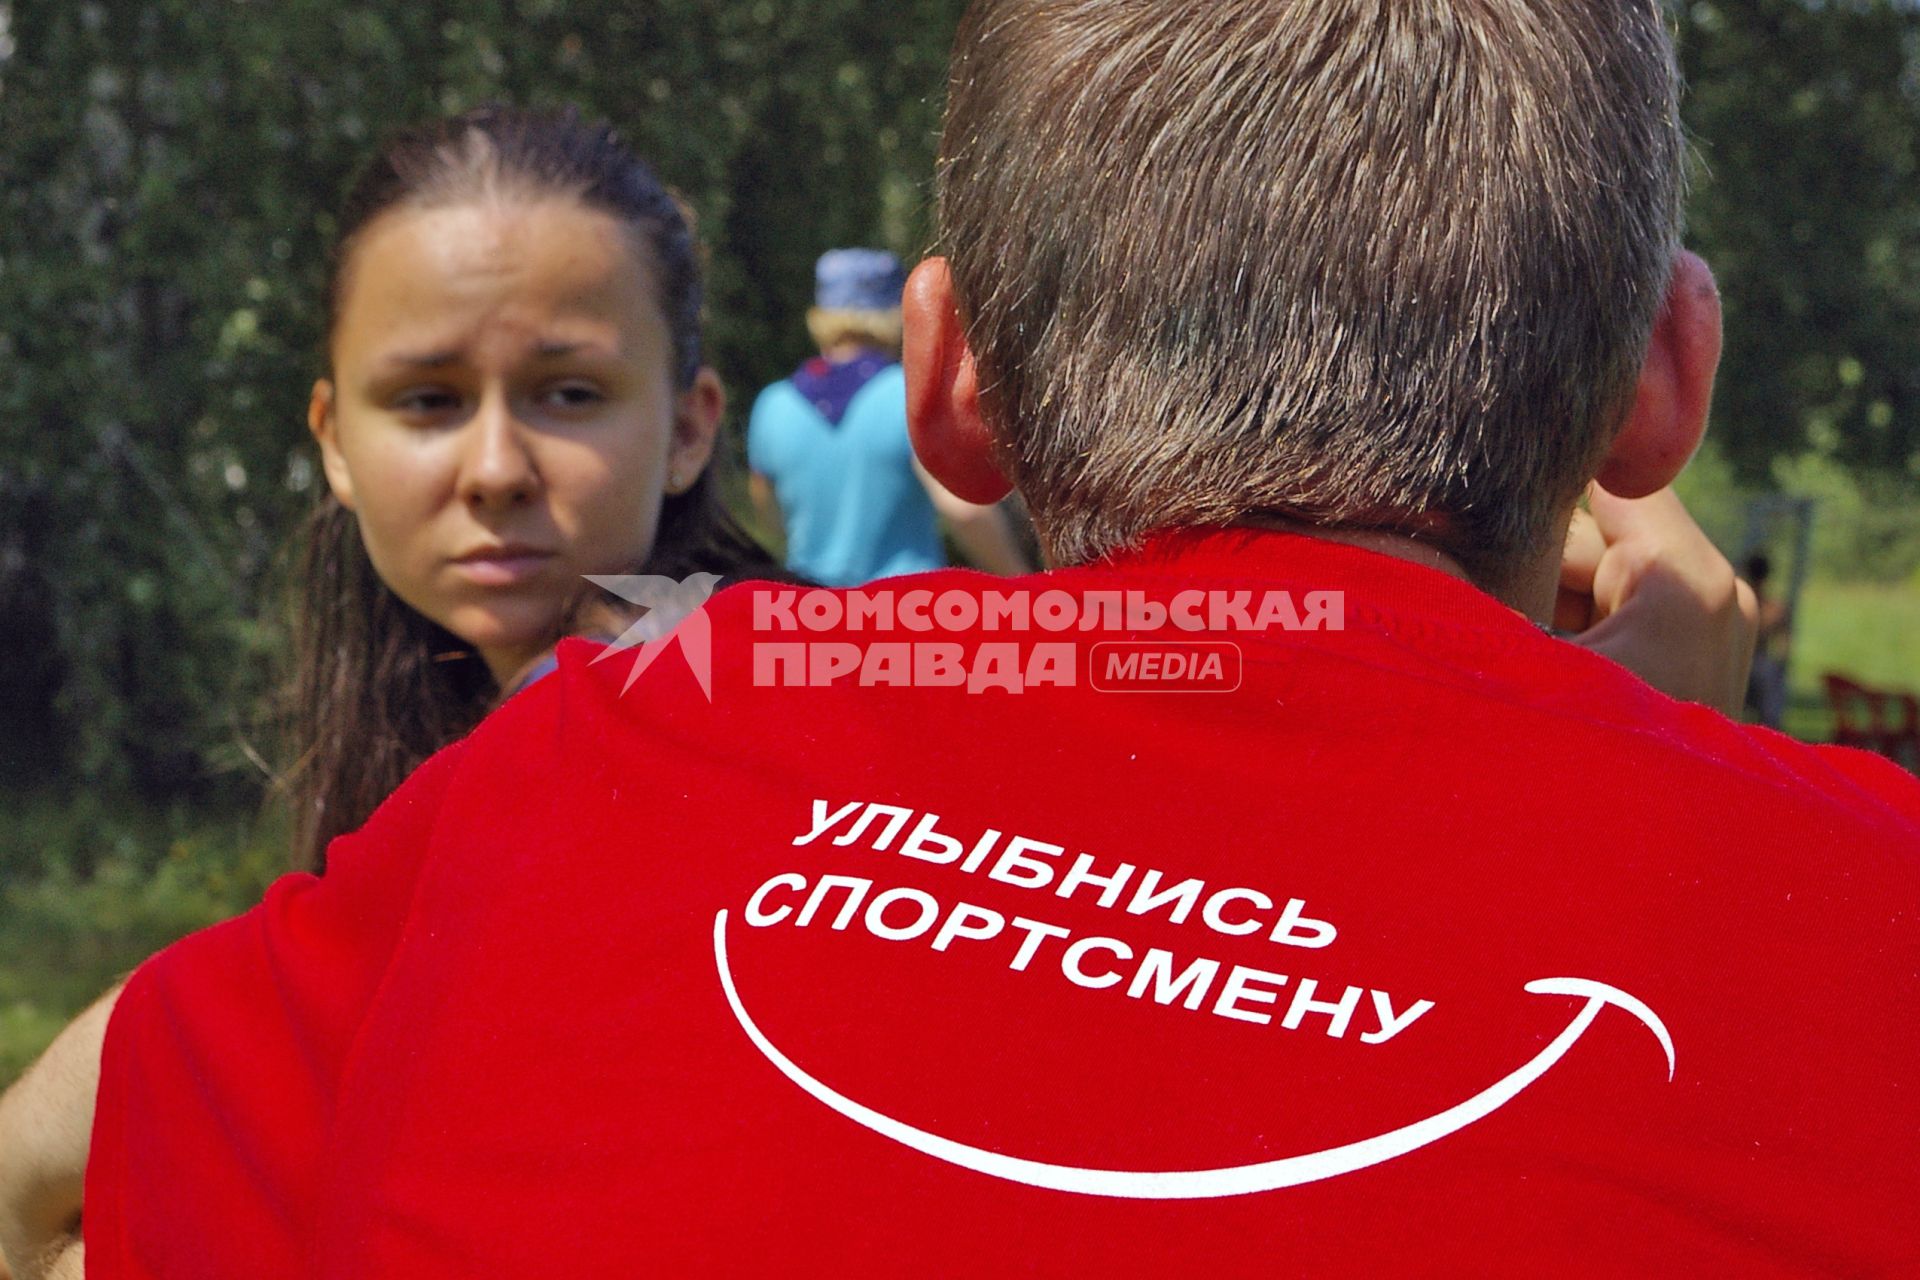 Девушка смотрит на юношу у которого на футболке надпись: `Улыбнись спортсмену`.